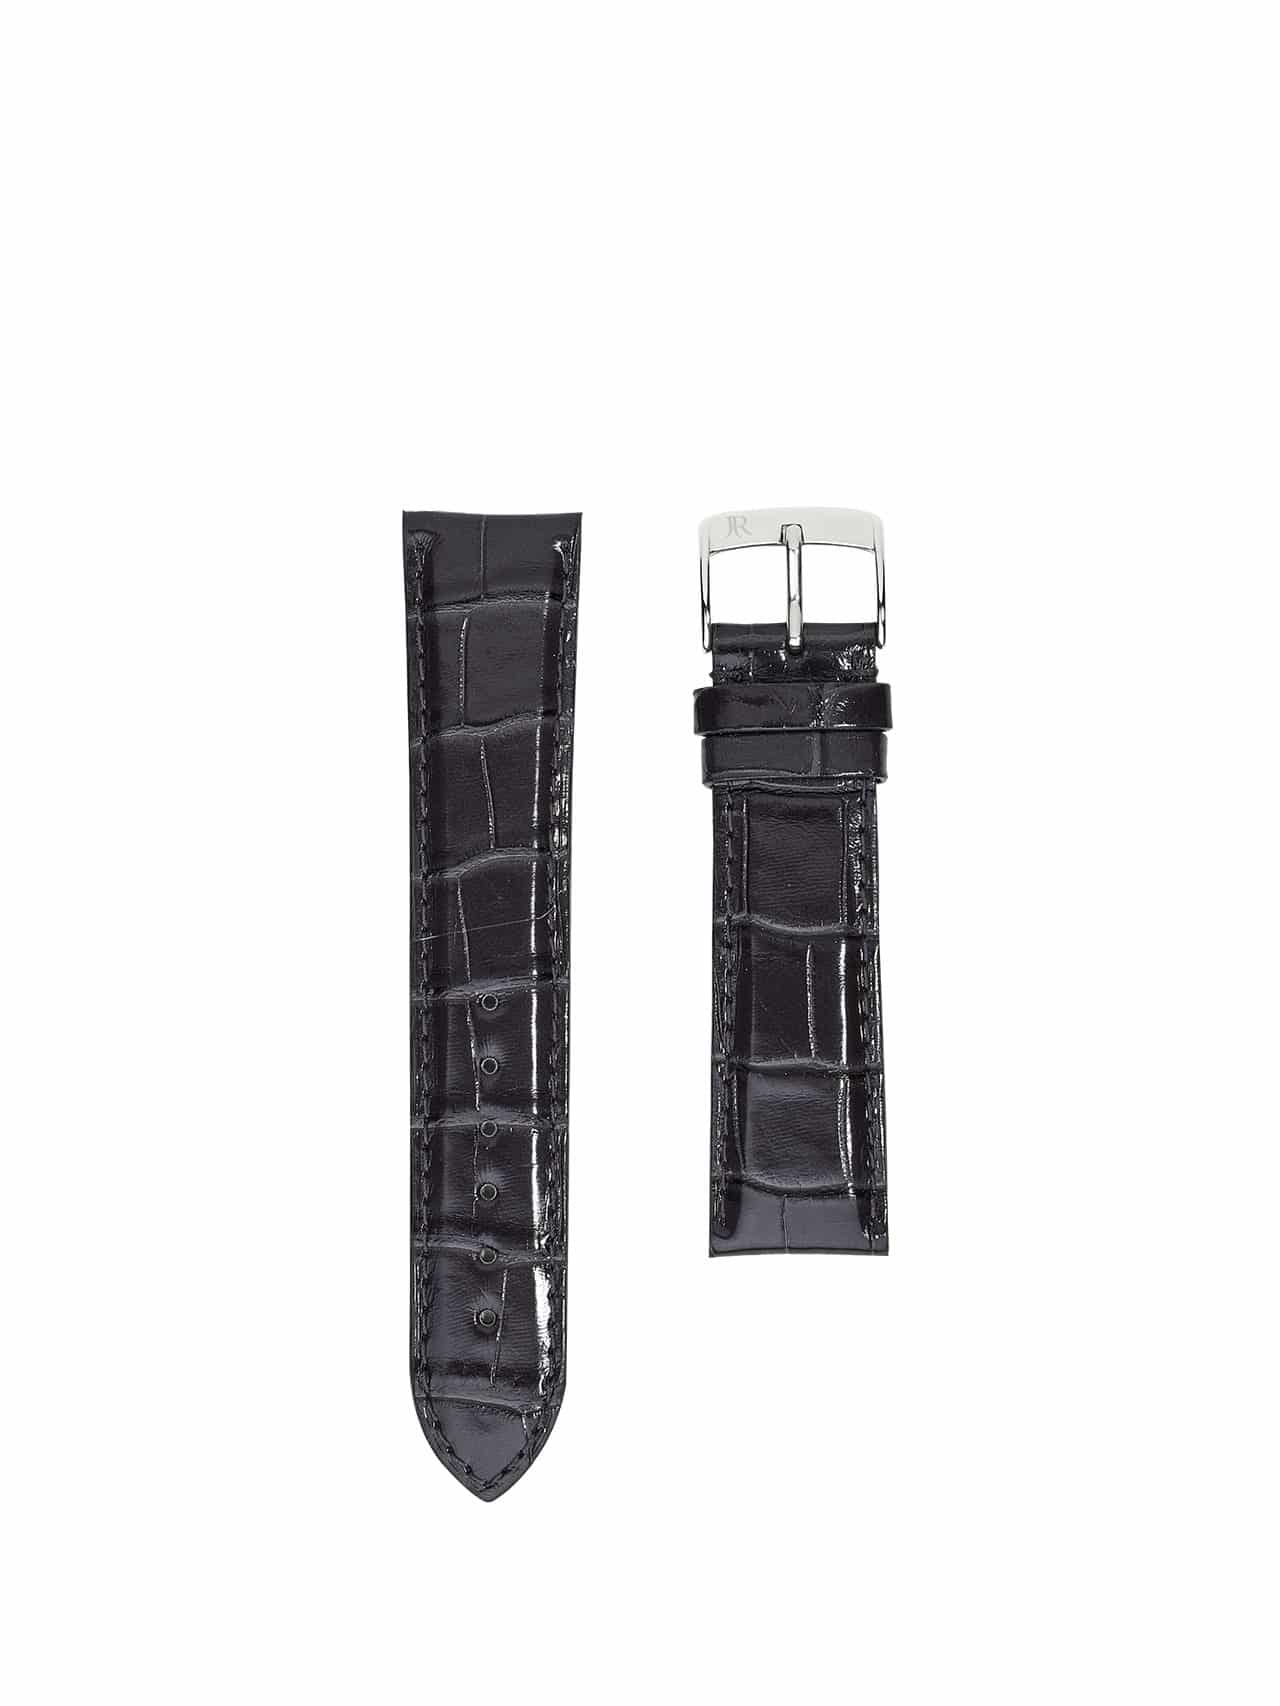 jean rousseau watch straps leather crocodile grey